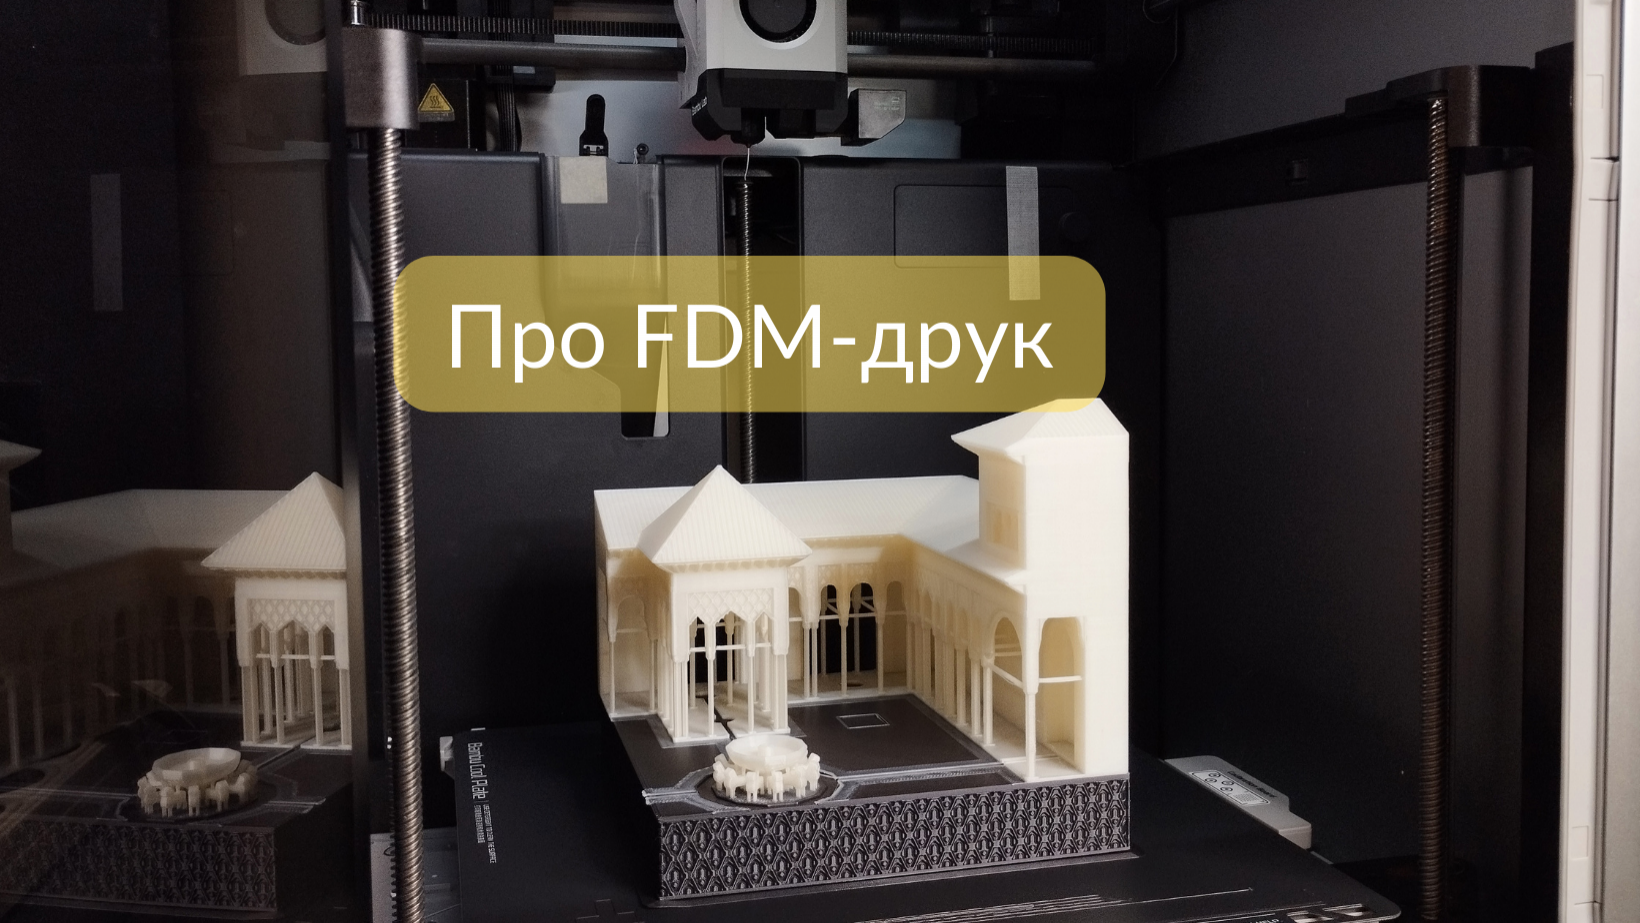 Дослідження потенціалу FDM-друку: від ідеї до фізичної реалізації